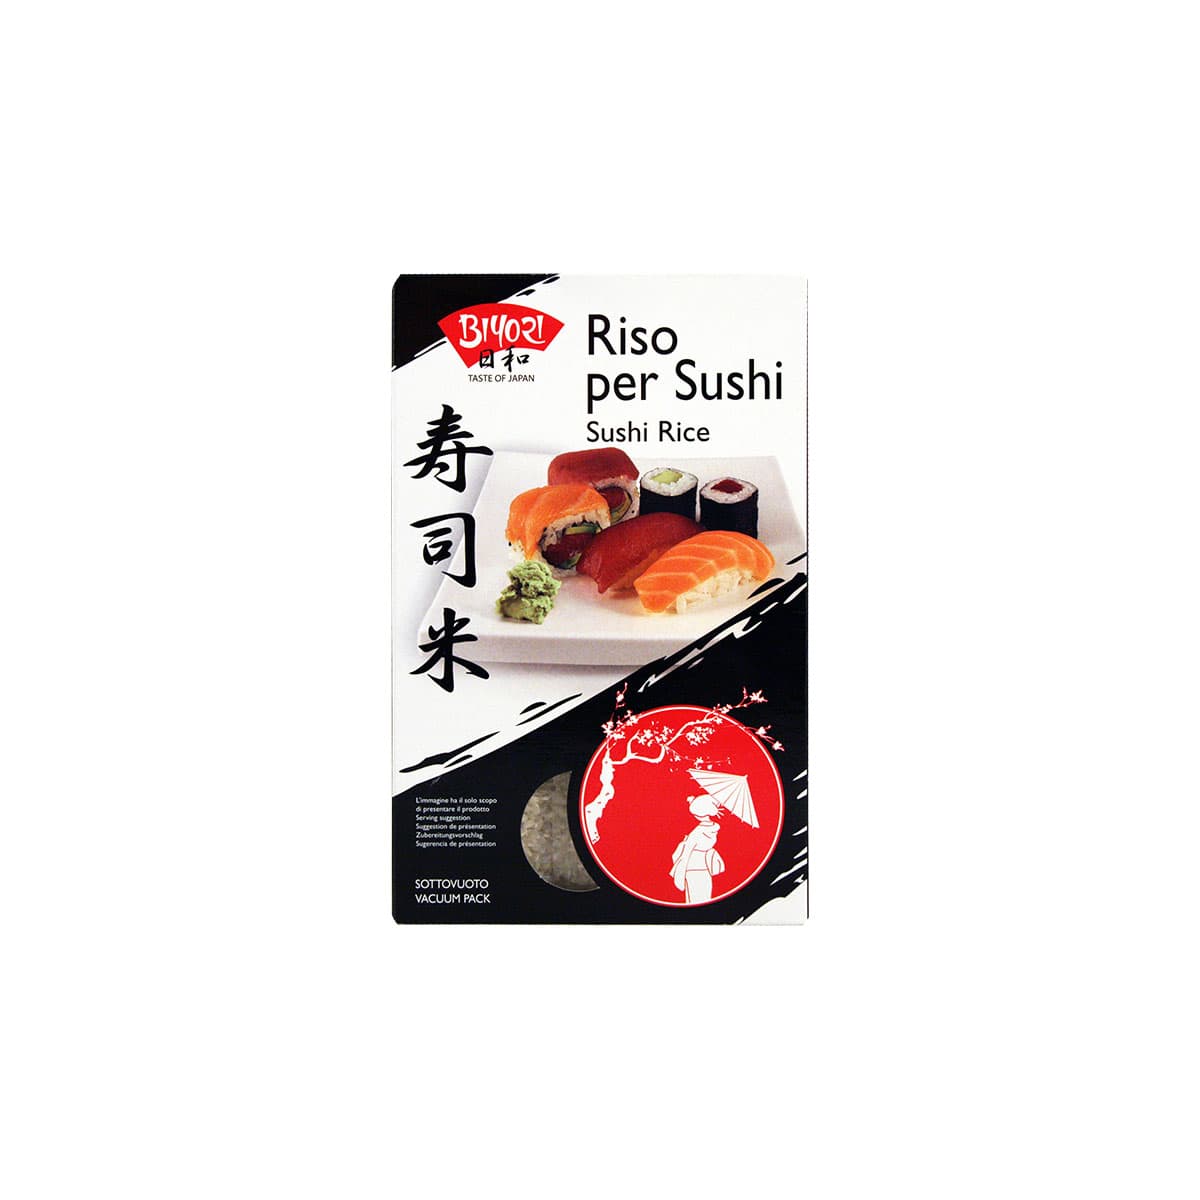 Riso per sushi bio - acquista ora!